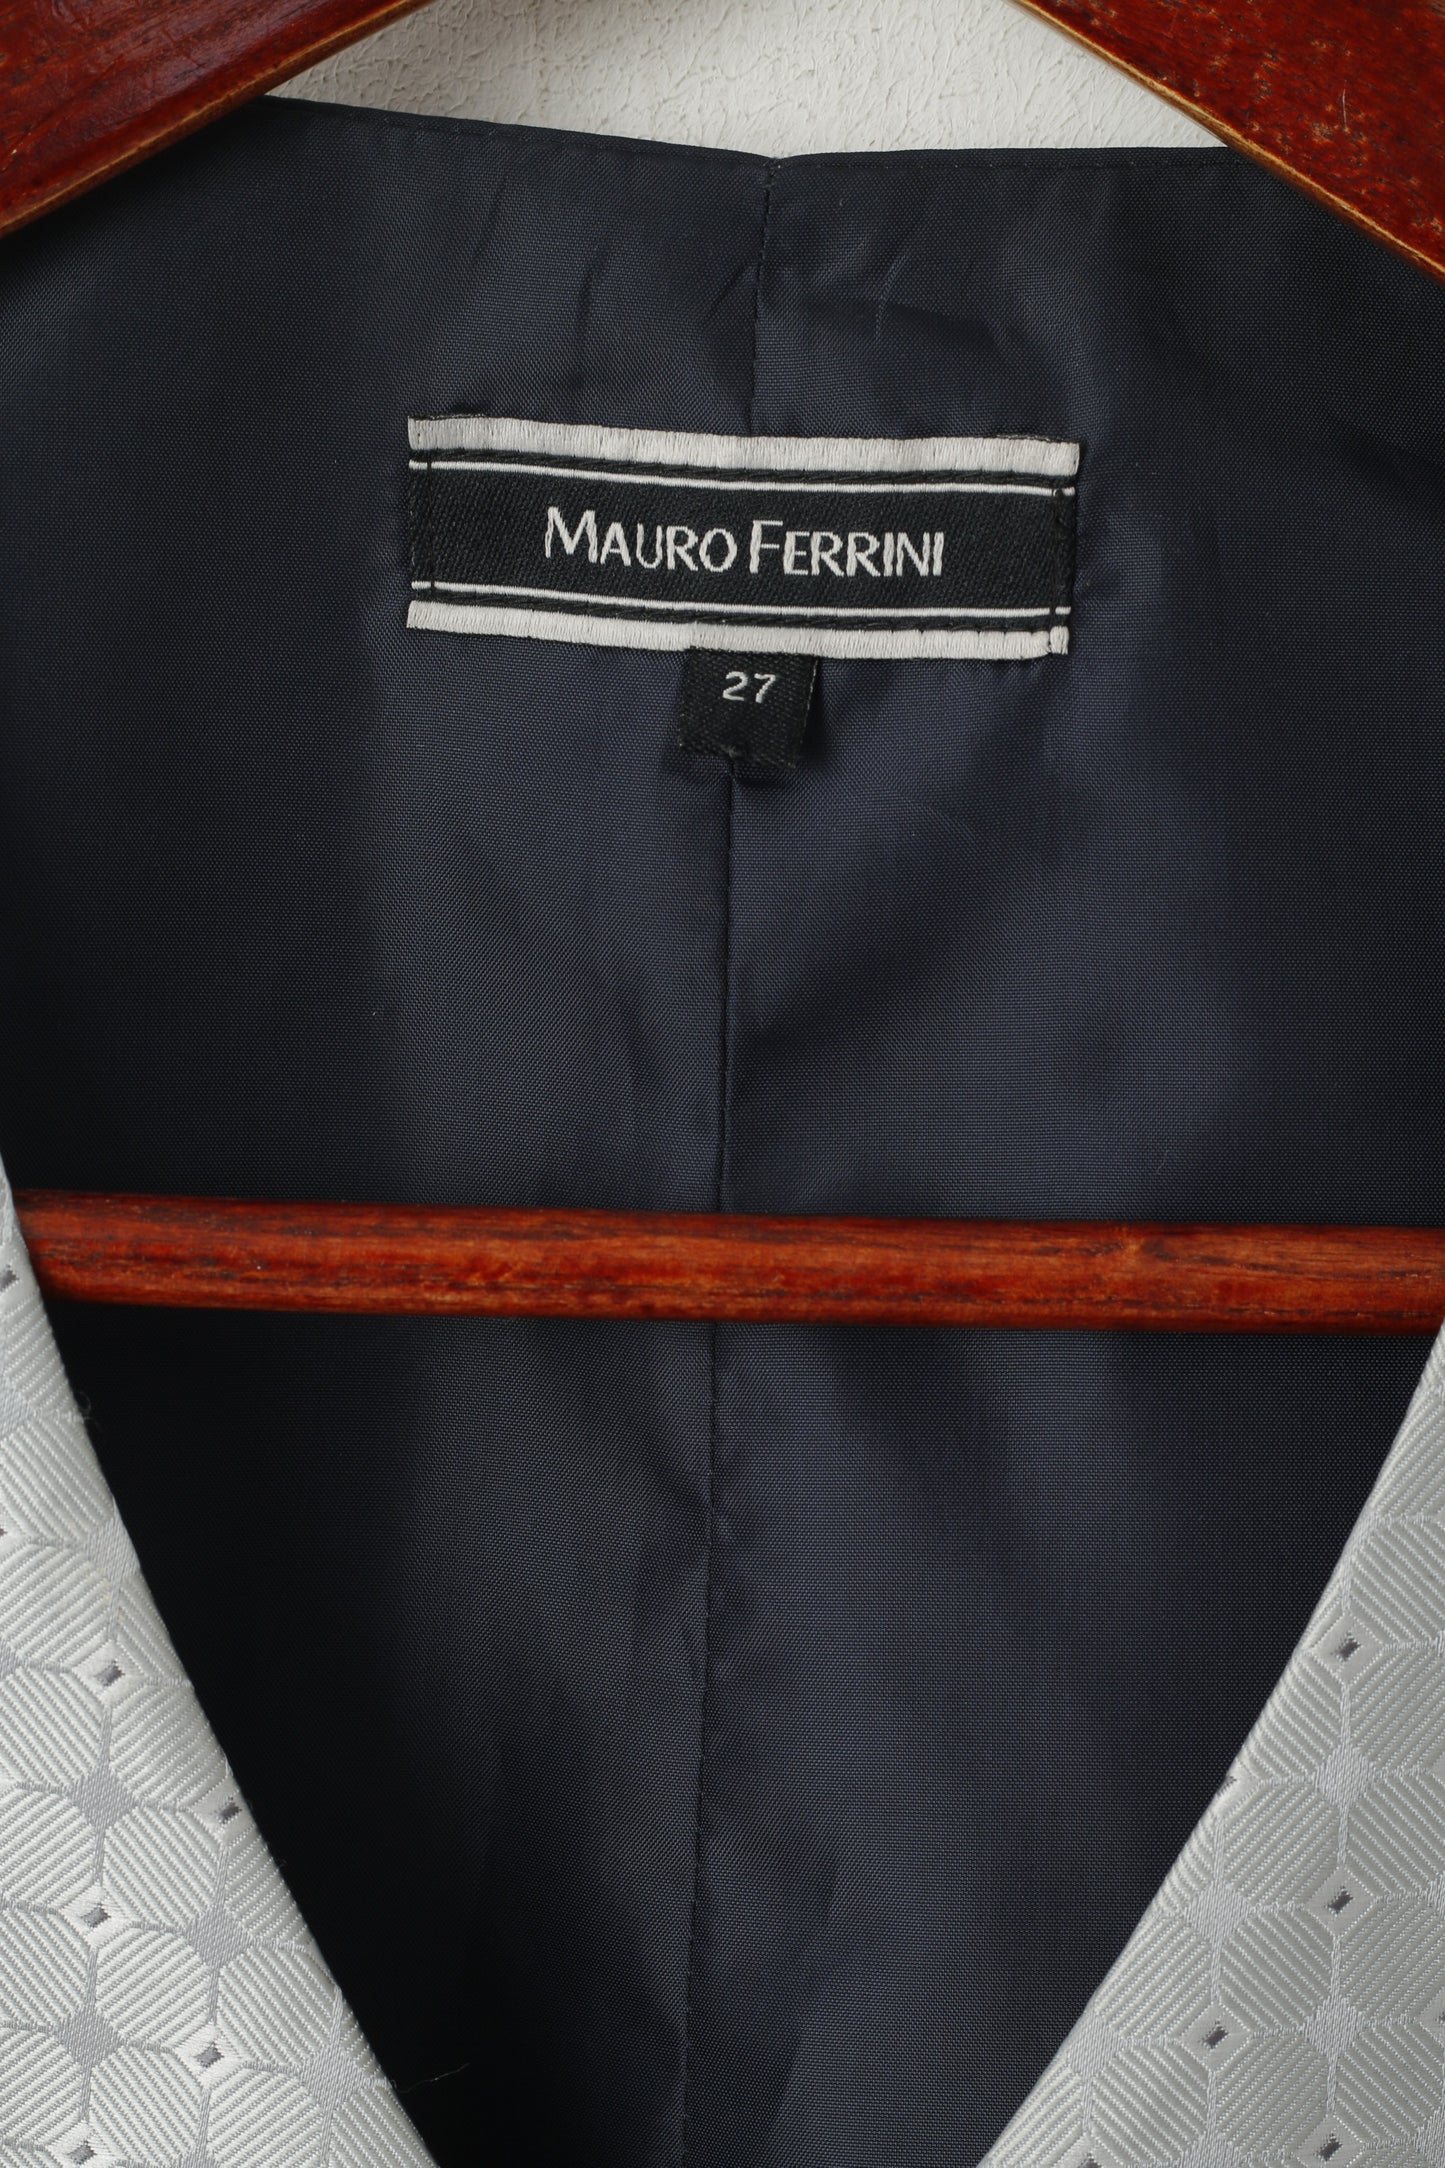 Mauro Ferrini Men 27 L Waistcoat Grey Navy Shiny Wedding Elegant Vest